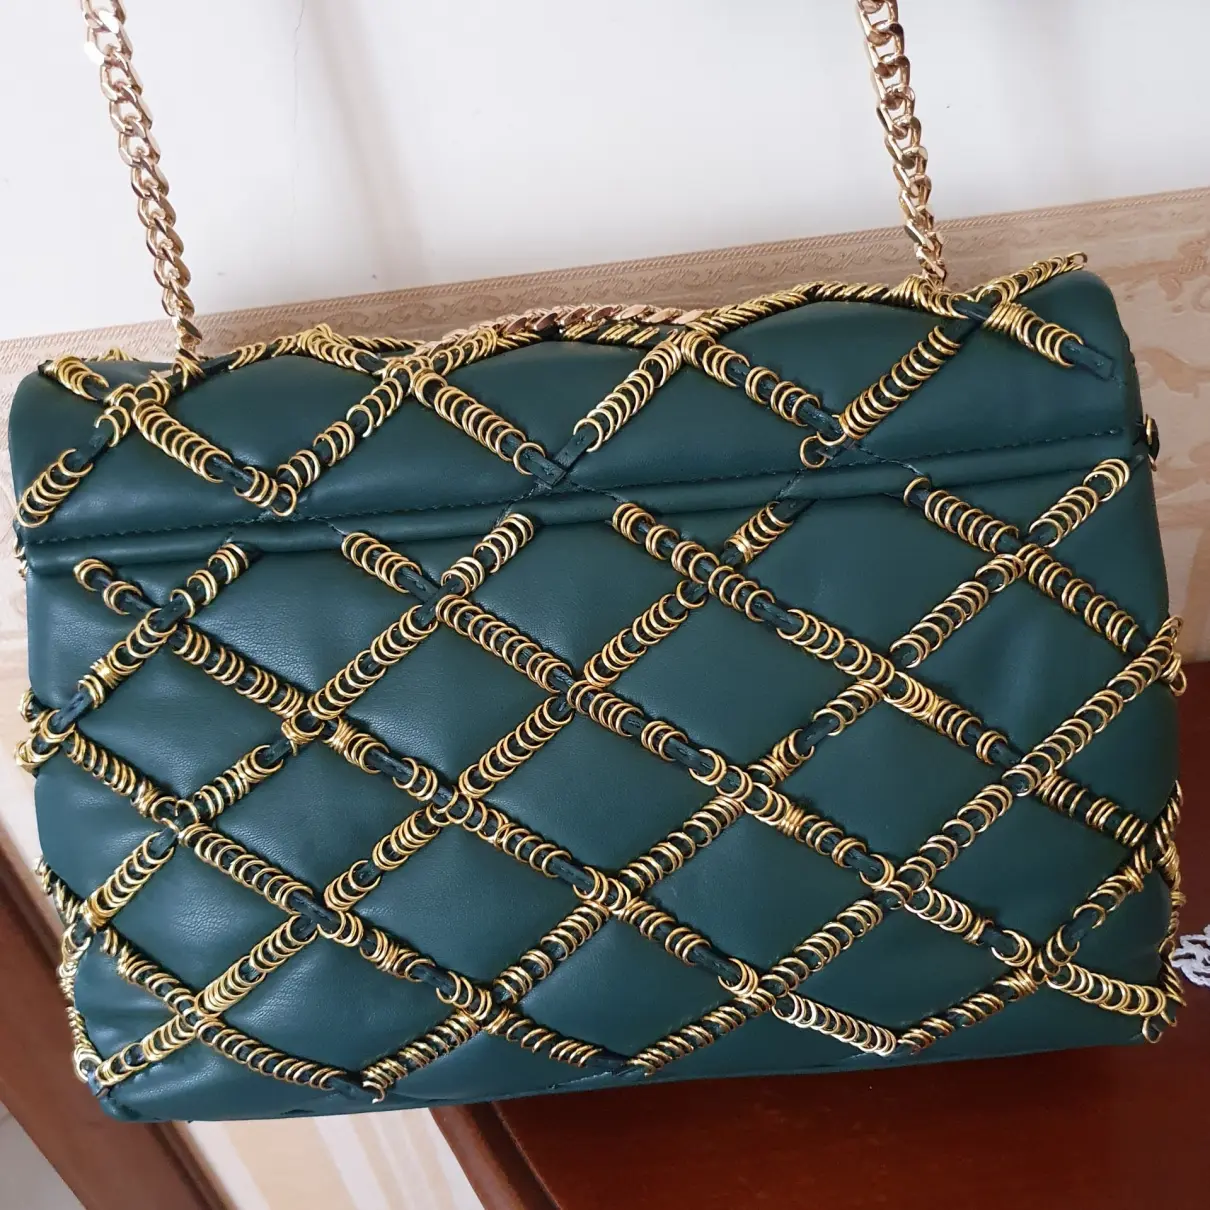 Luxury La carrie Handbags Women